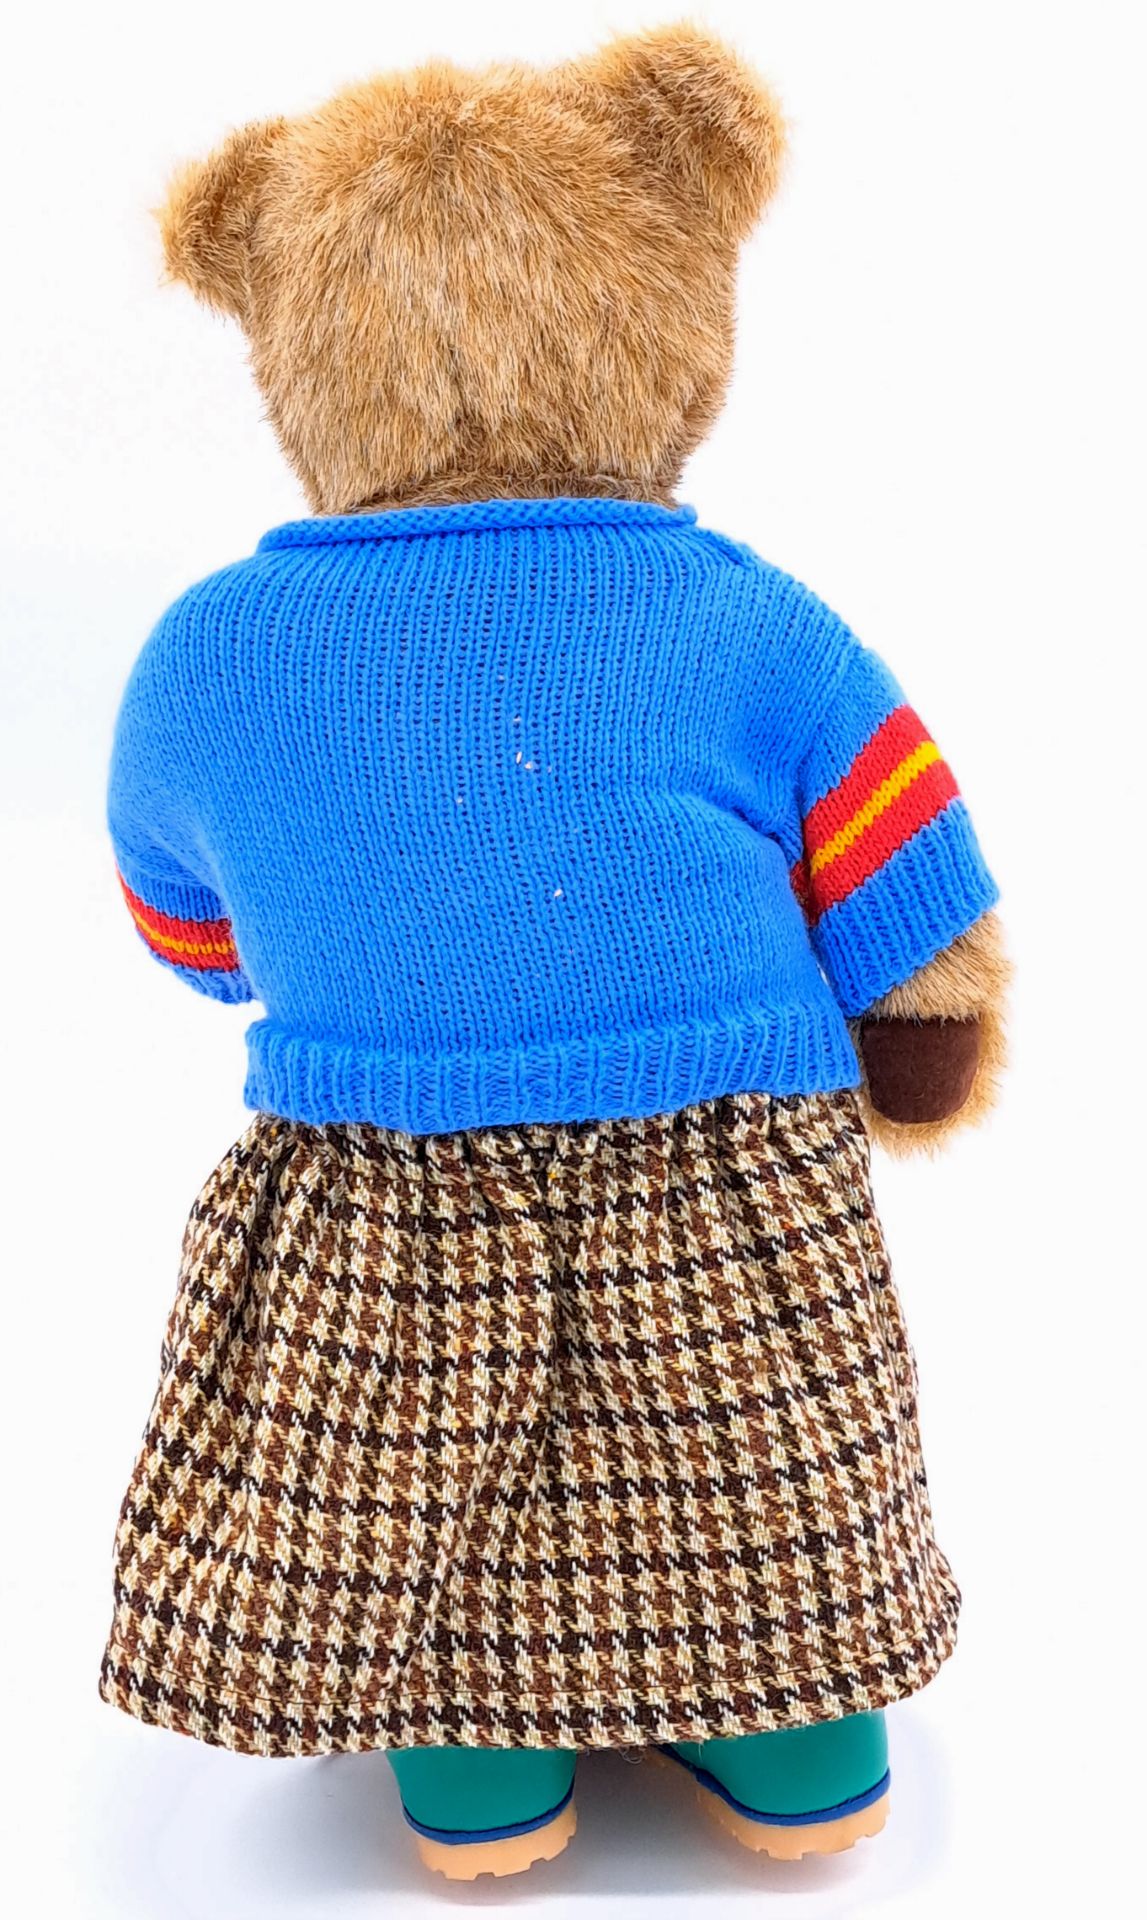 Dean's Rag Book Lakeland Bears (UK) vintage teddy bear - Image 2 of 2